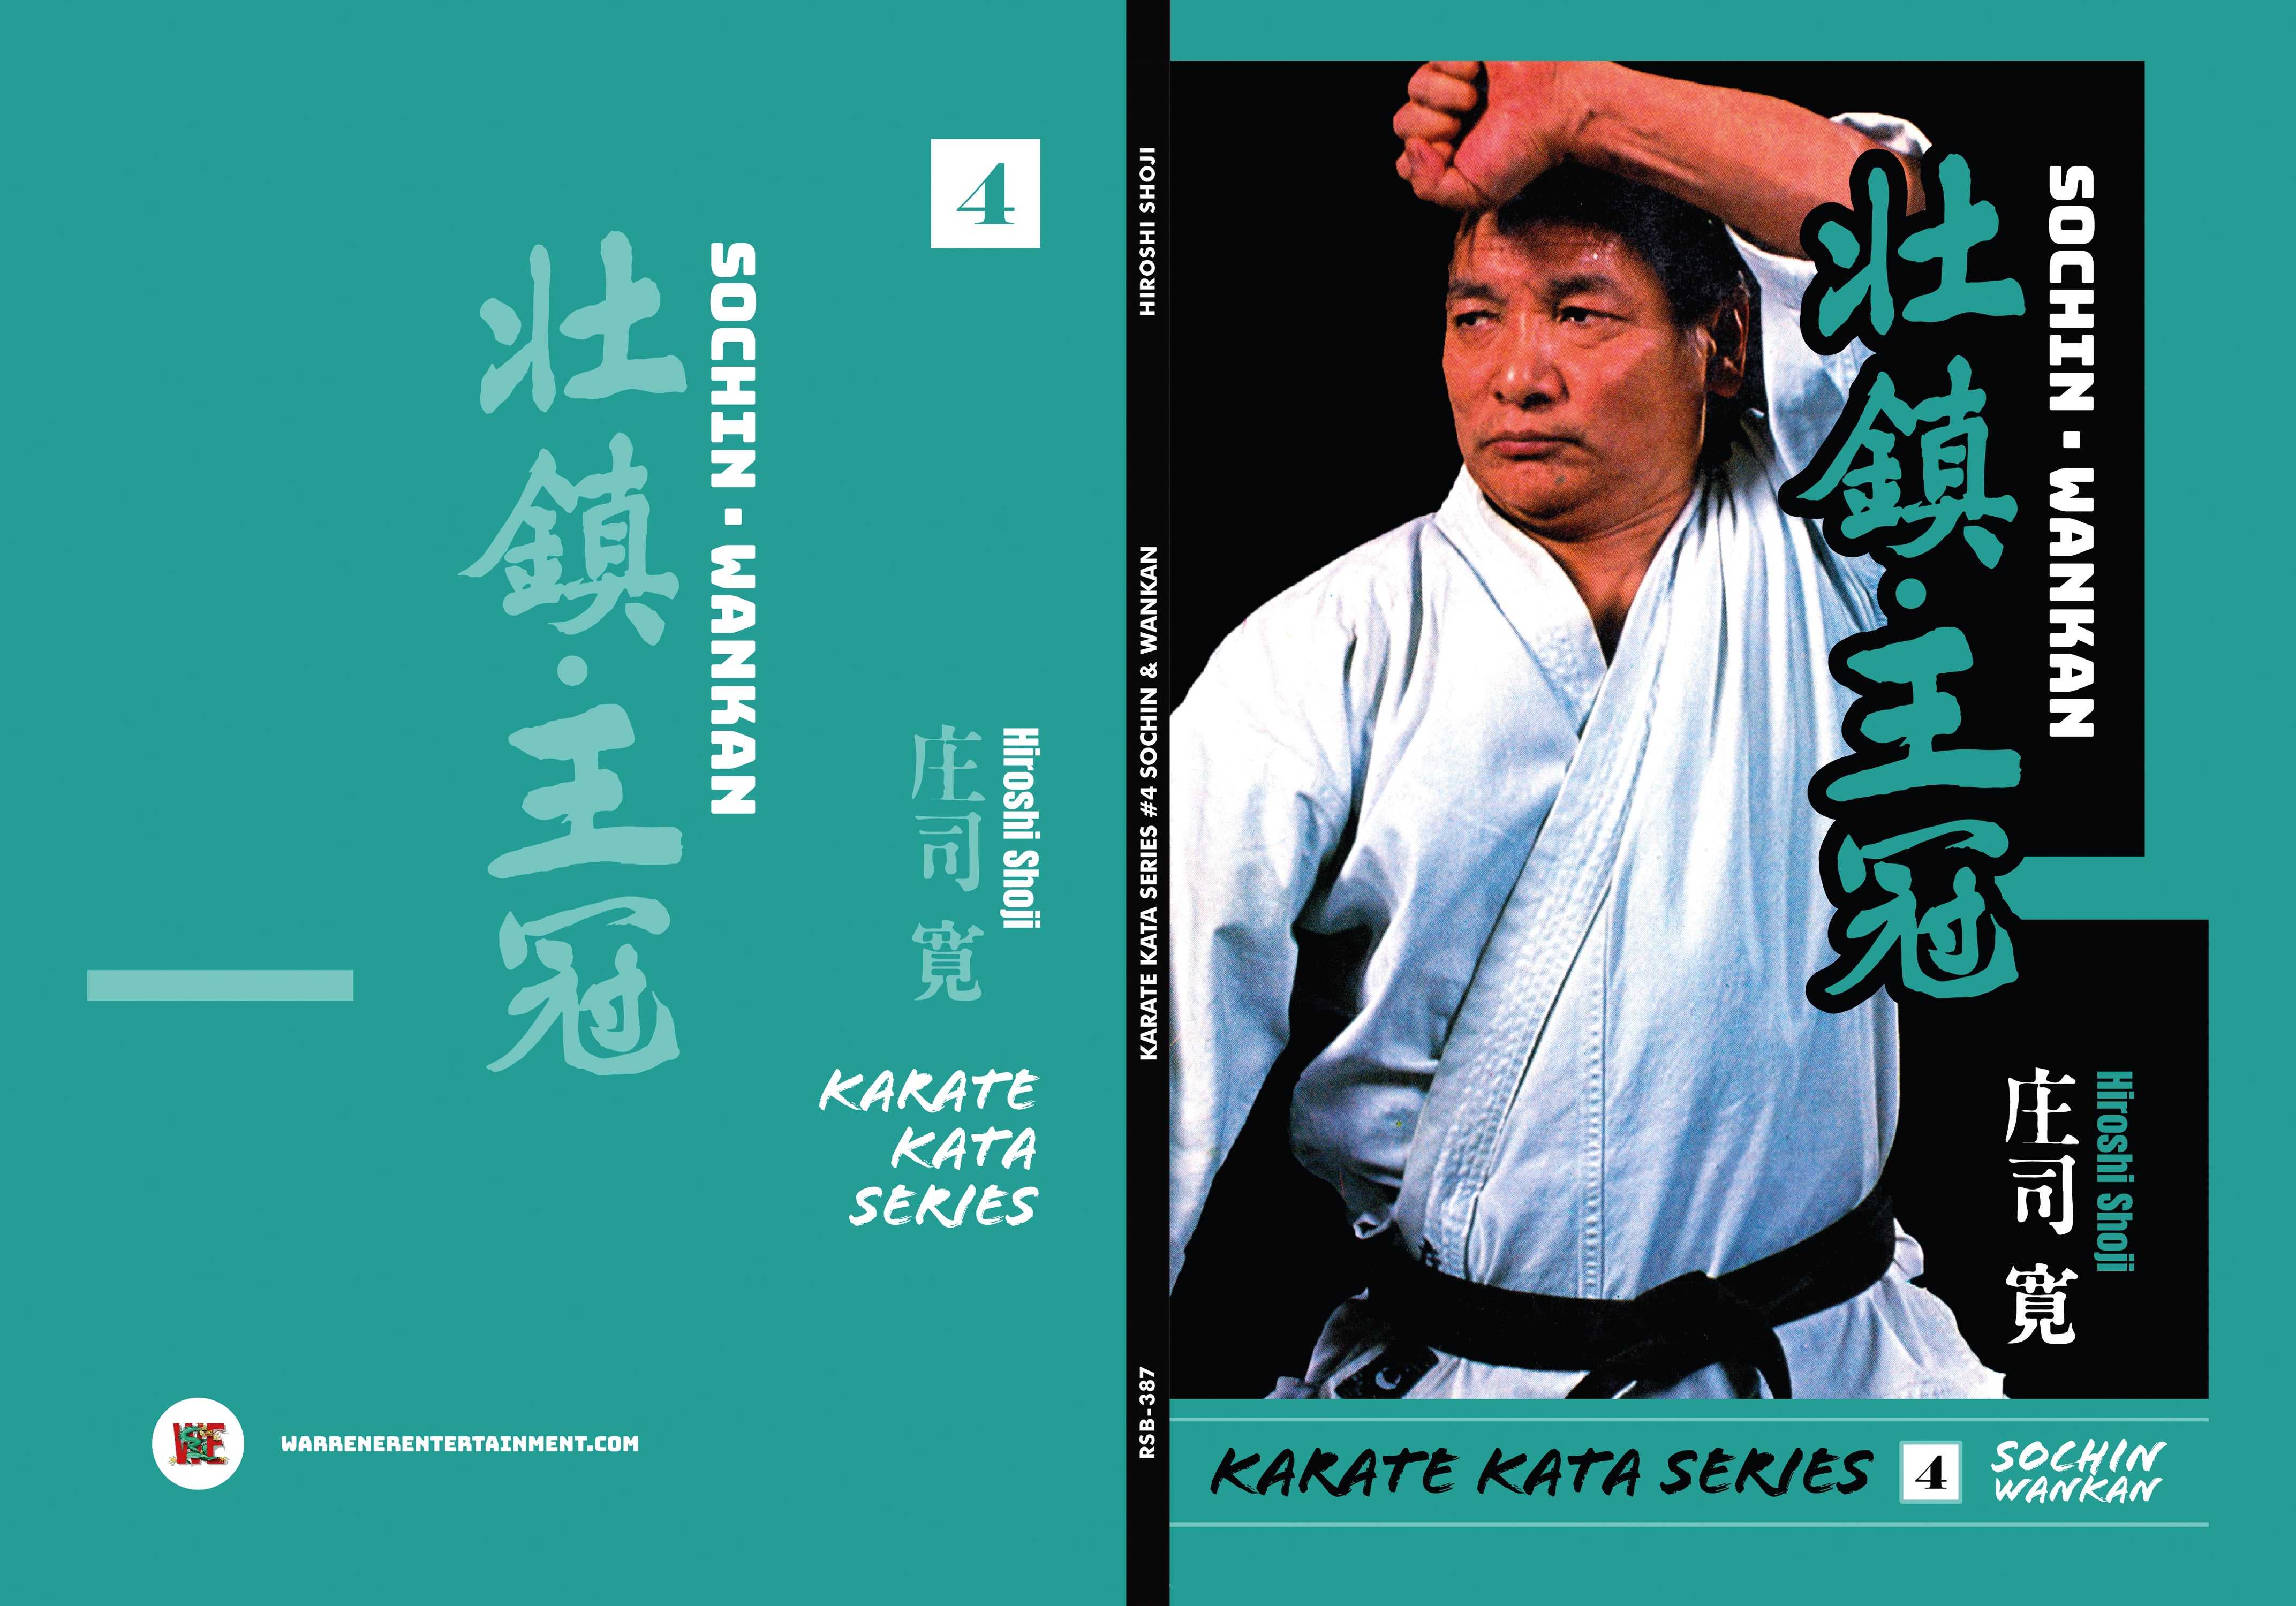 DIGITAL E-BOOK Karate Kata #4 Sochin and Wankan by Hiroshi Shoji